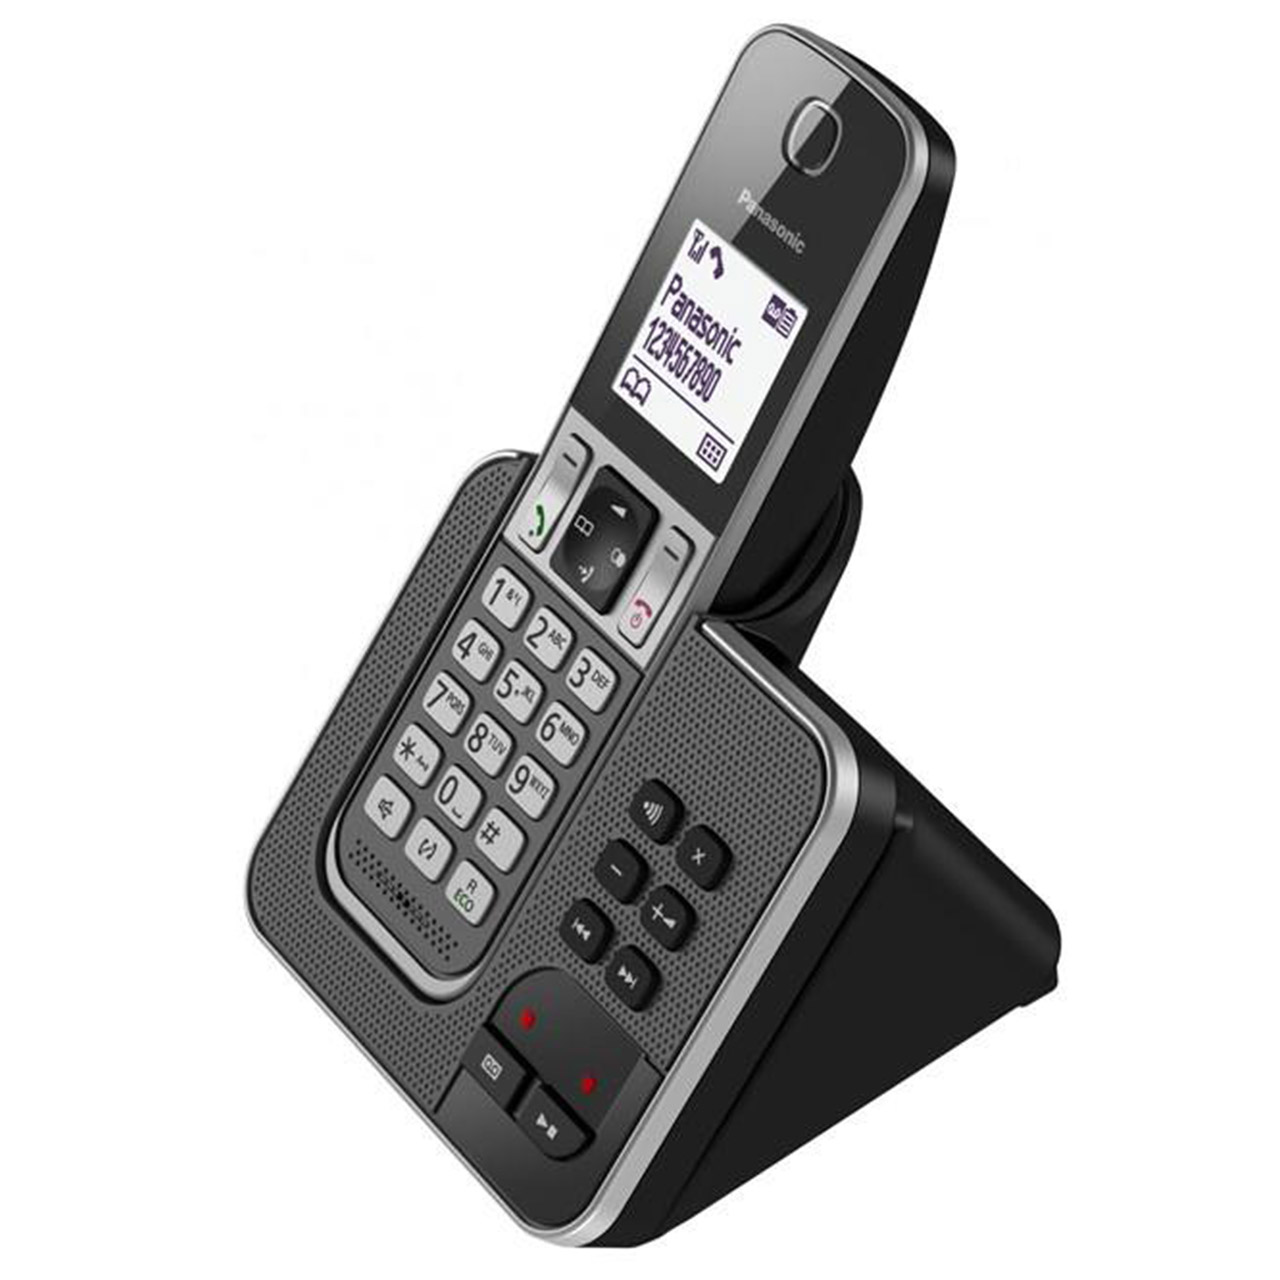 گوشی تلفن بیسیم پاناسونیک مدل KX-TGD320BX